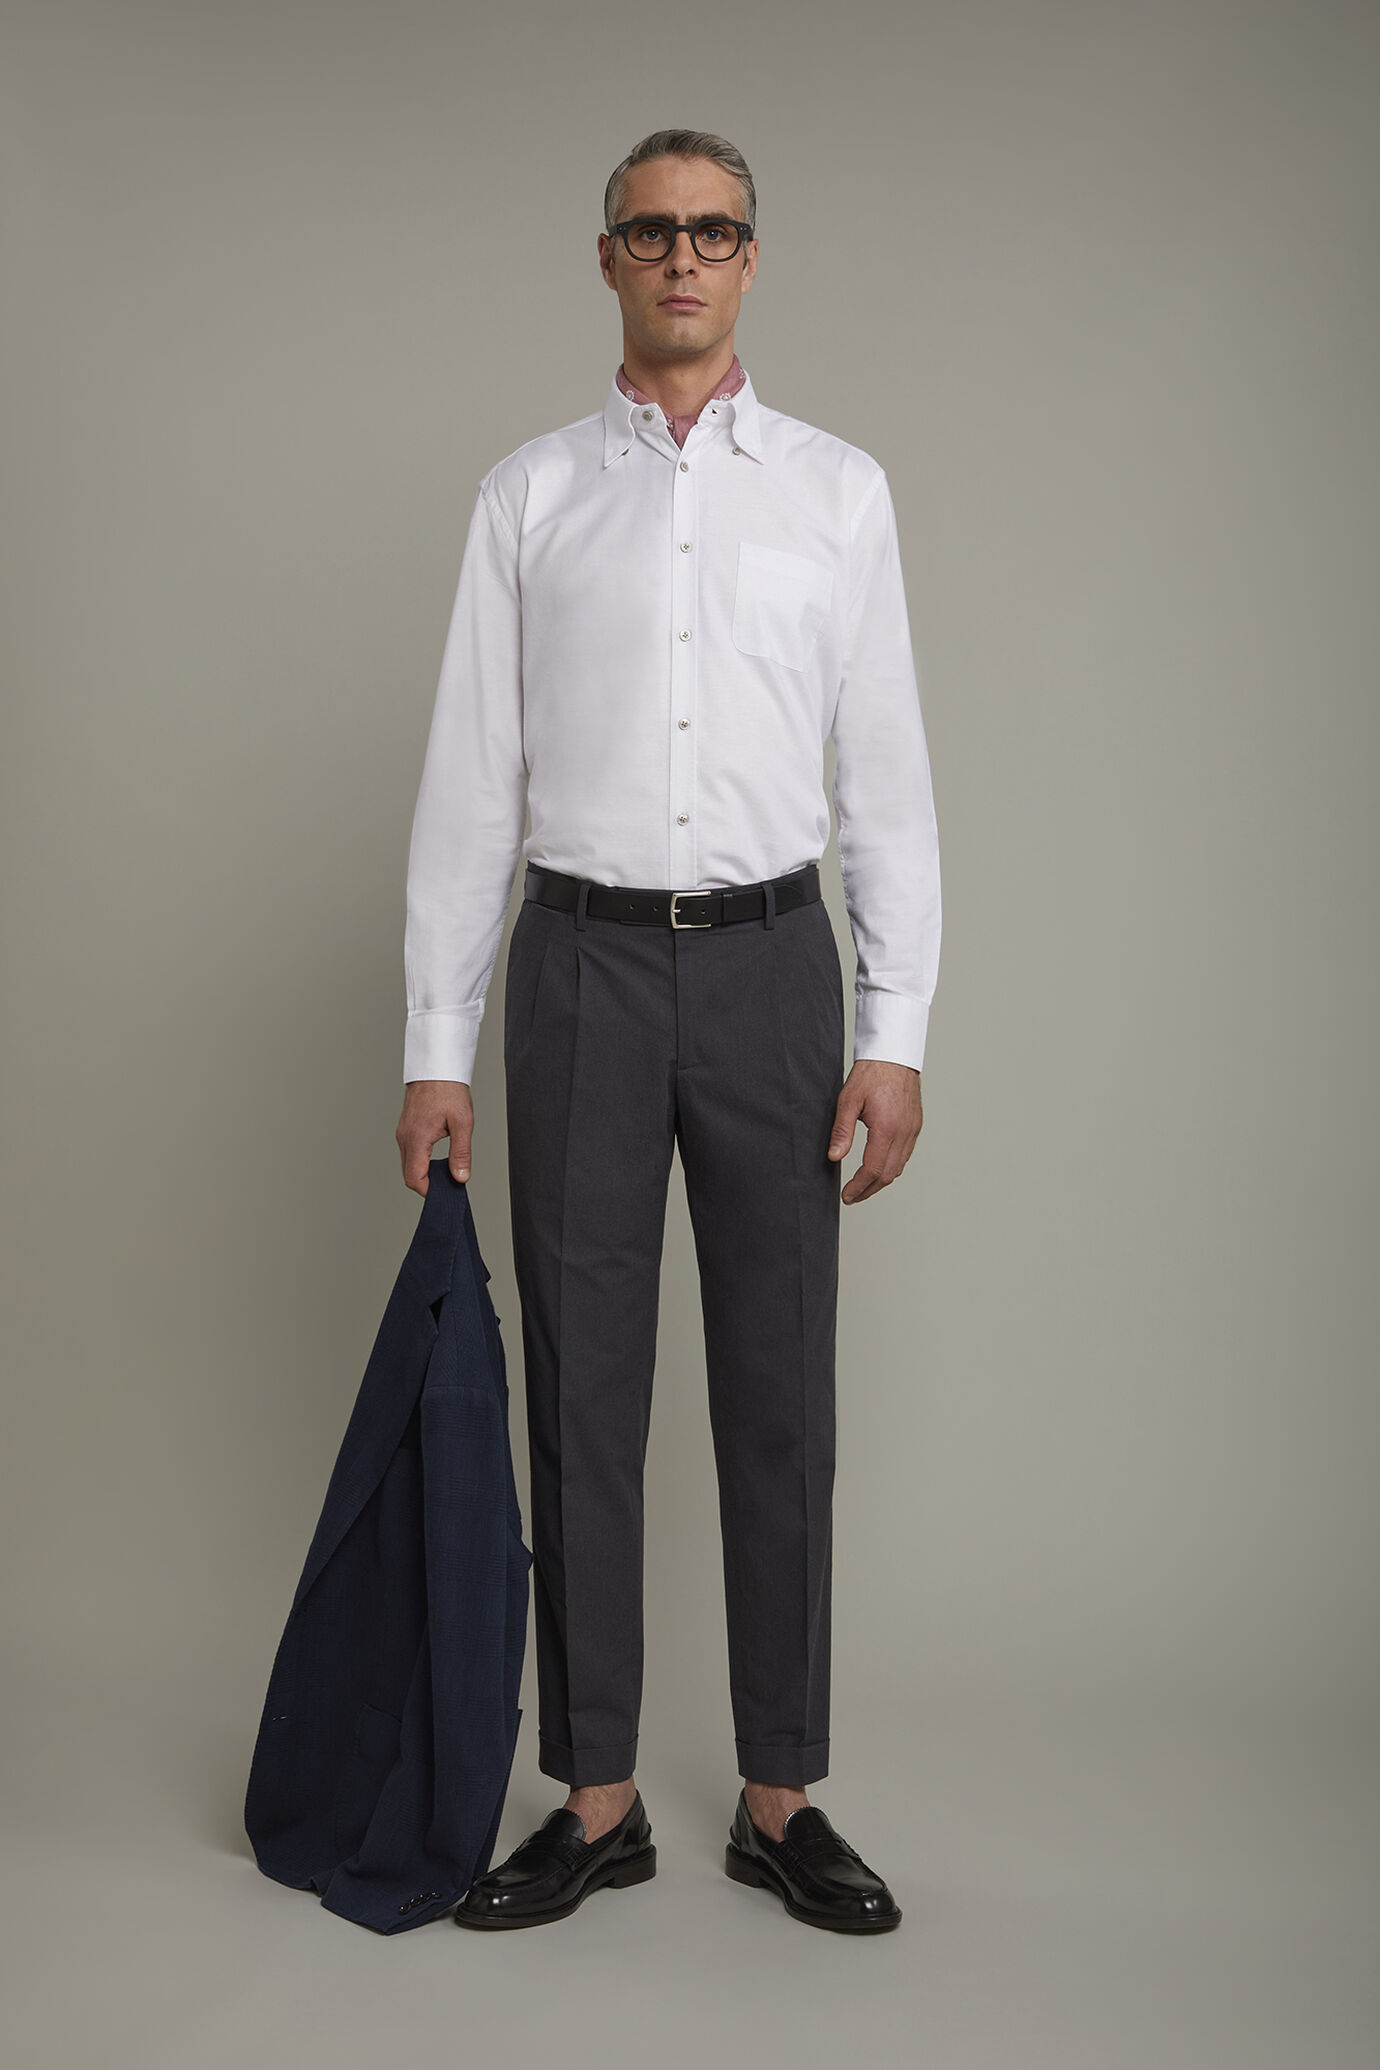 Einfarbiges Herrenhemd mit klassischem Button-Down-Kragen aus gestreiftem, extrem leichtem Oxford-Stoff in bequemer Passform